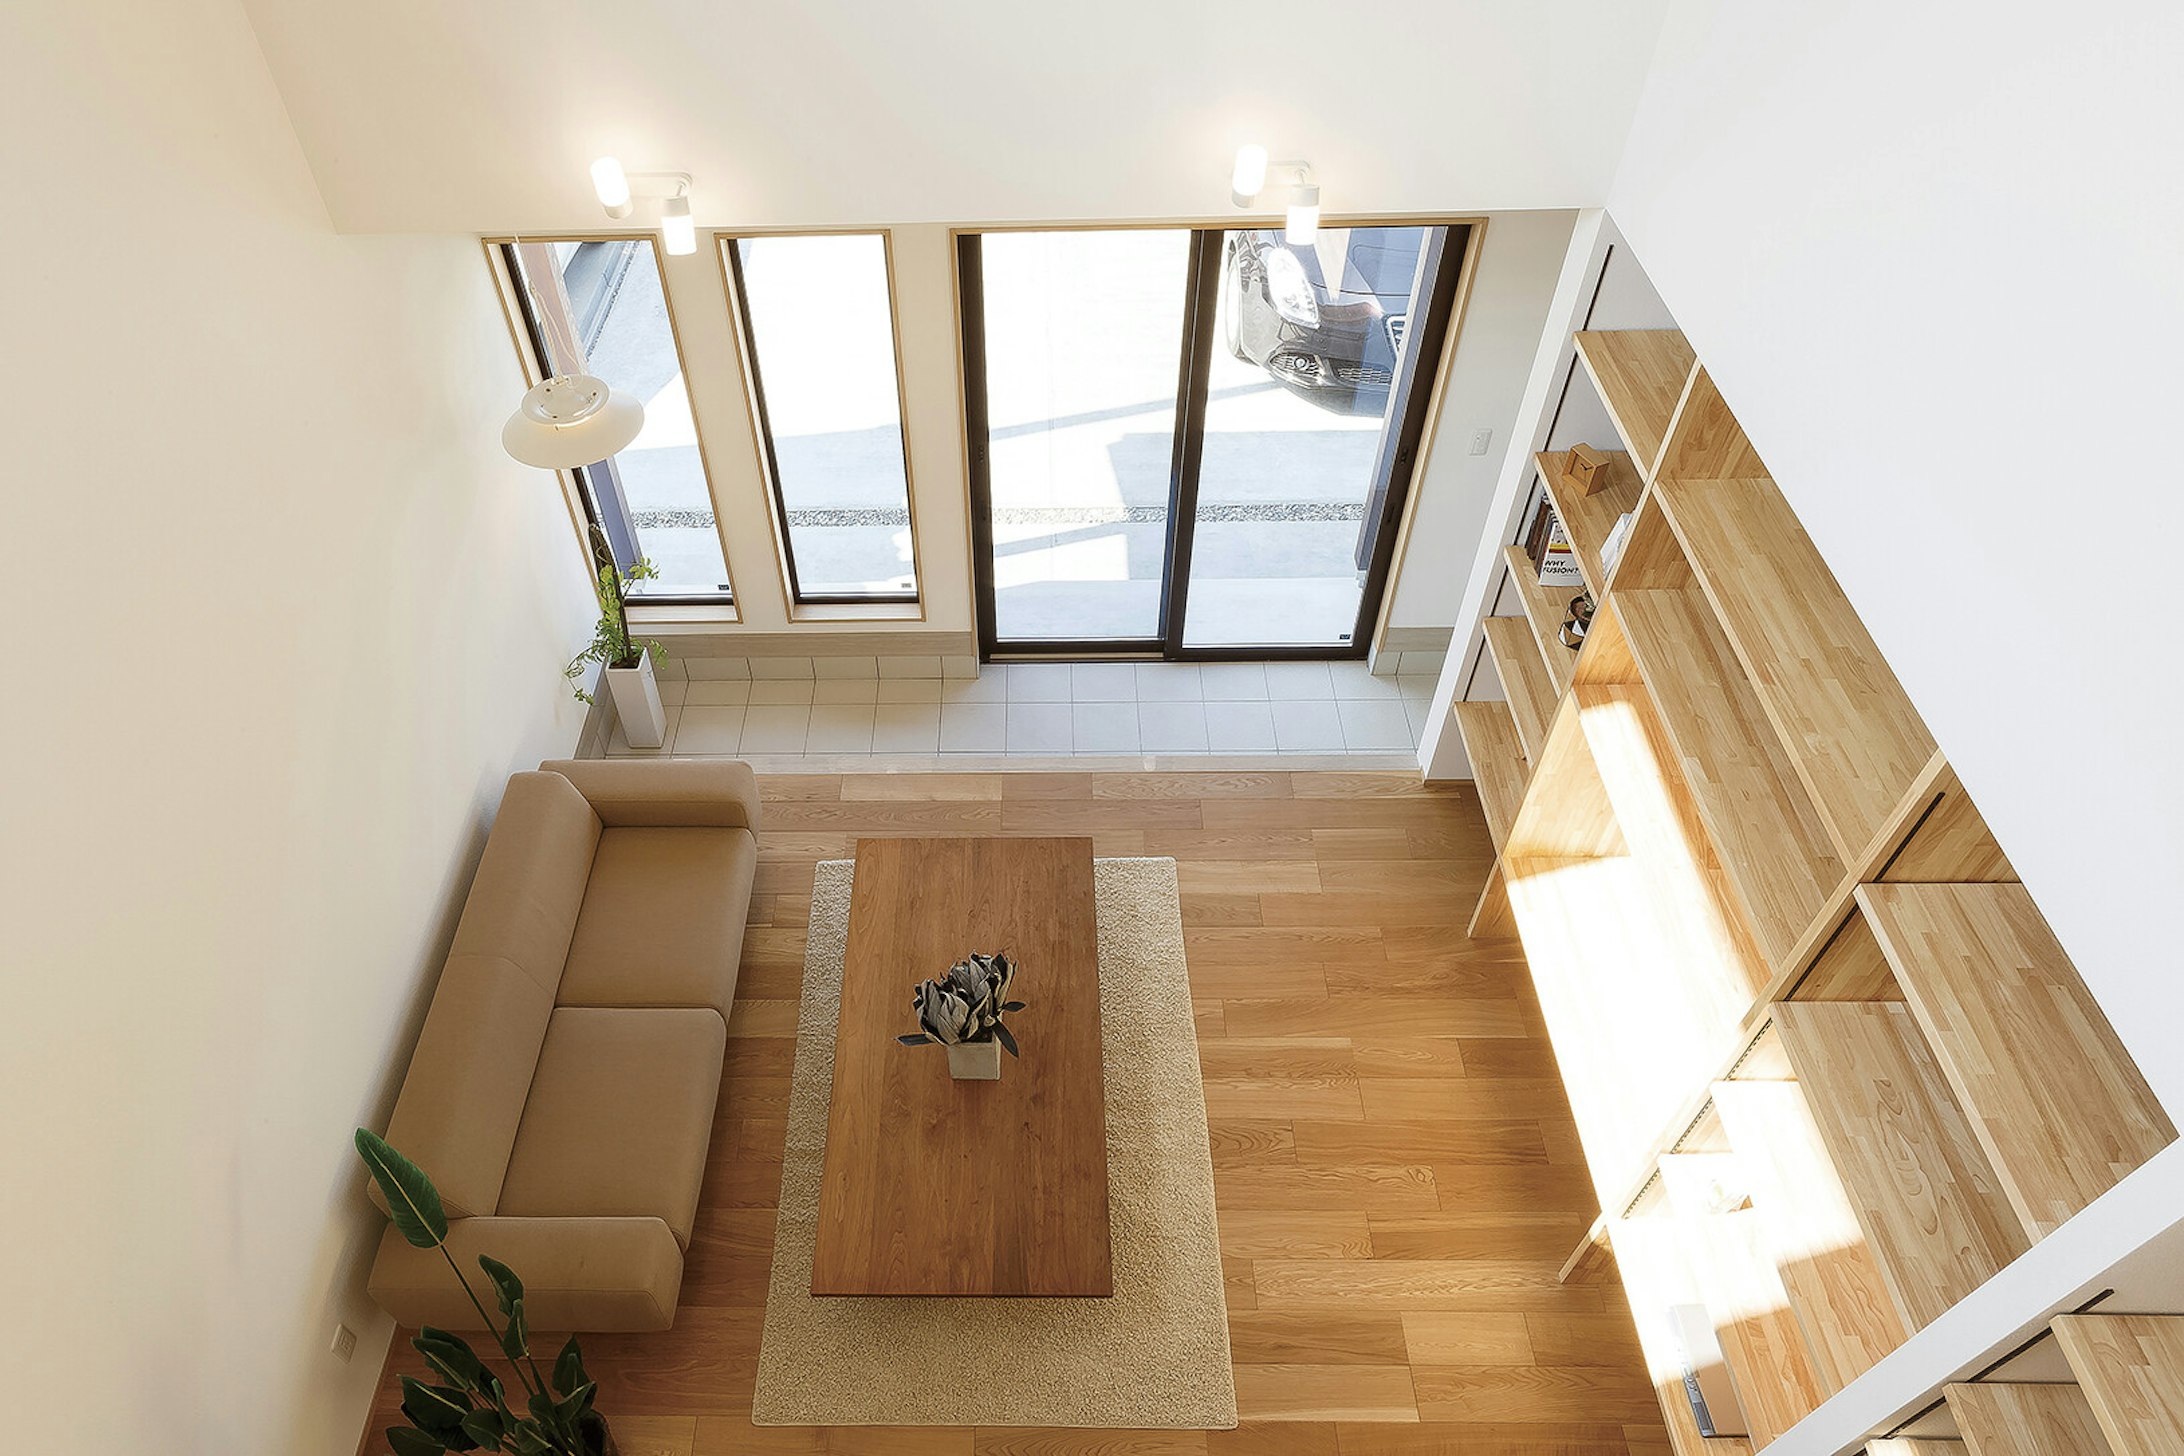 【石川】東山住宅株式会社_仕切りのないオープンな空間が広がる。 プレウォール工法で、家中快適なのも魅力